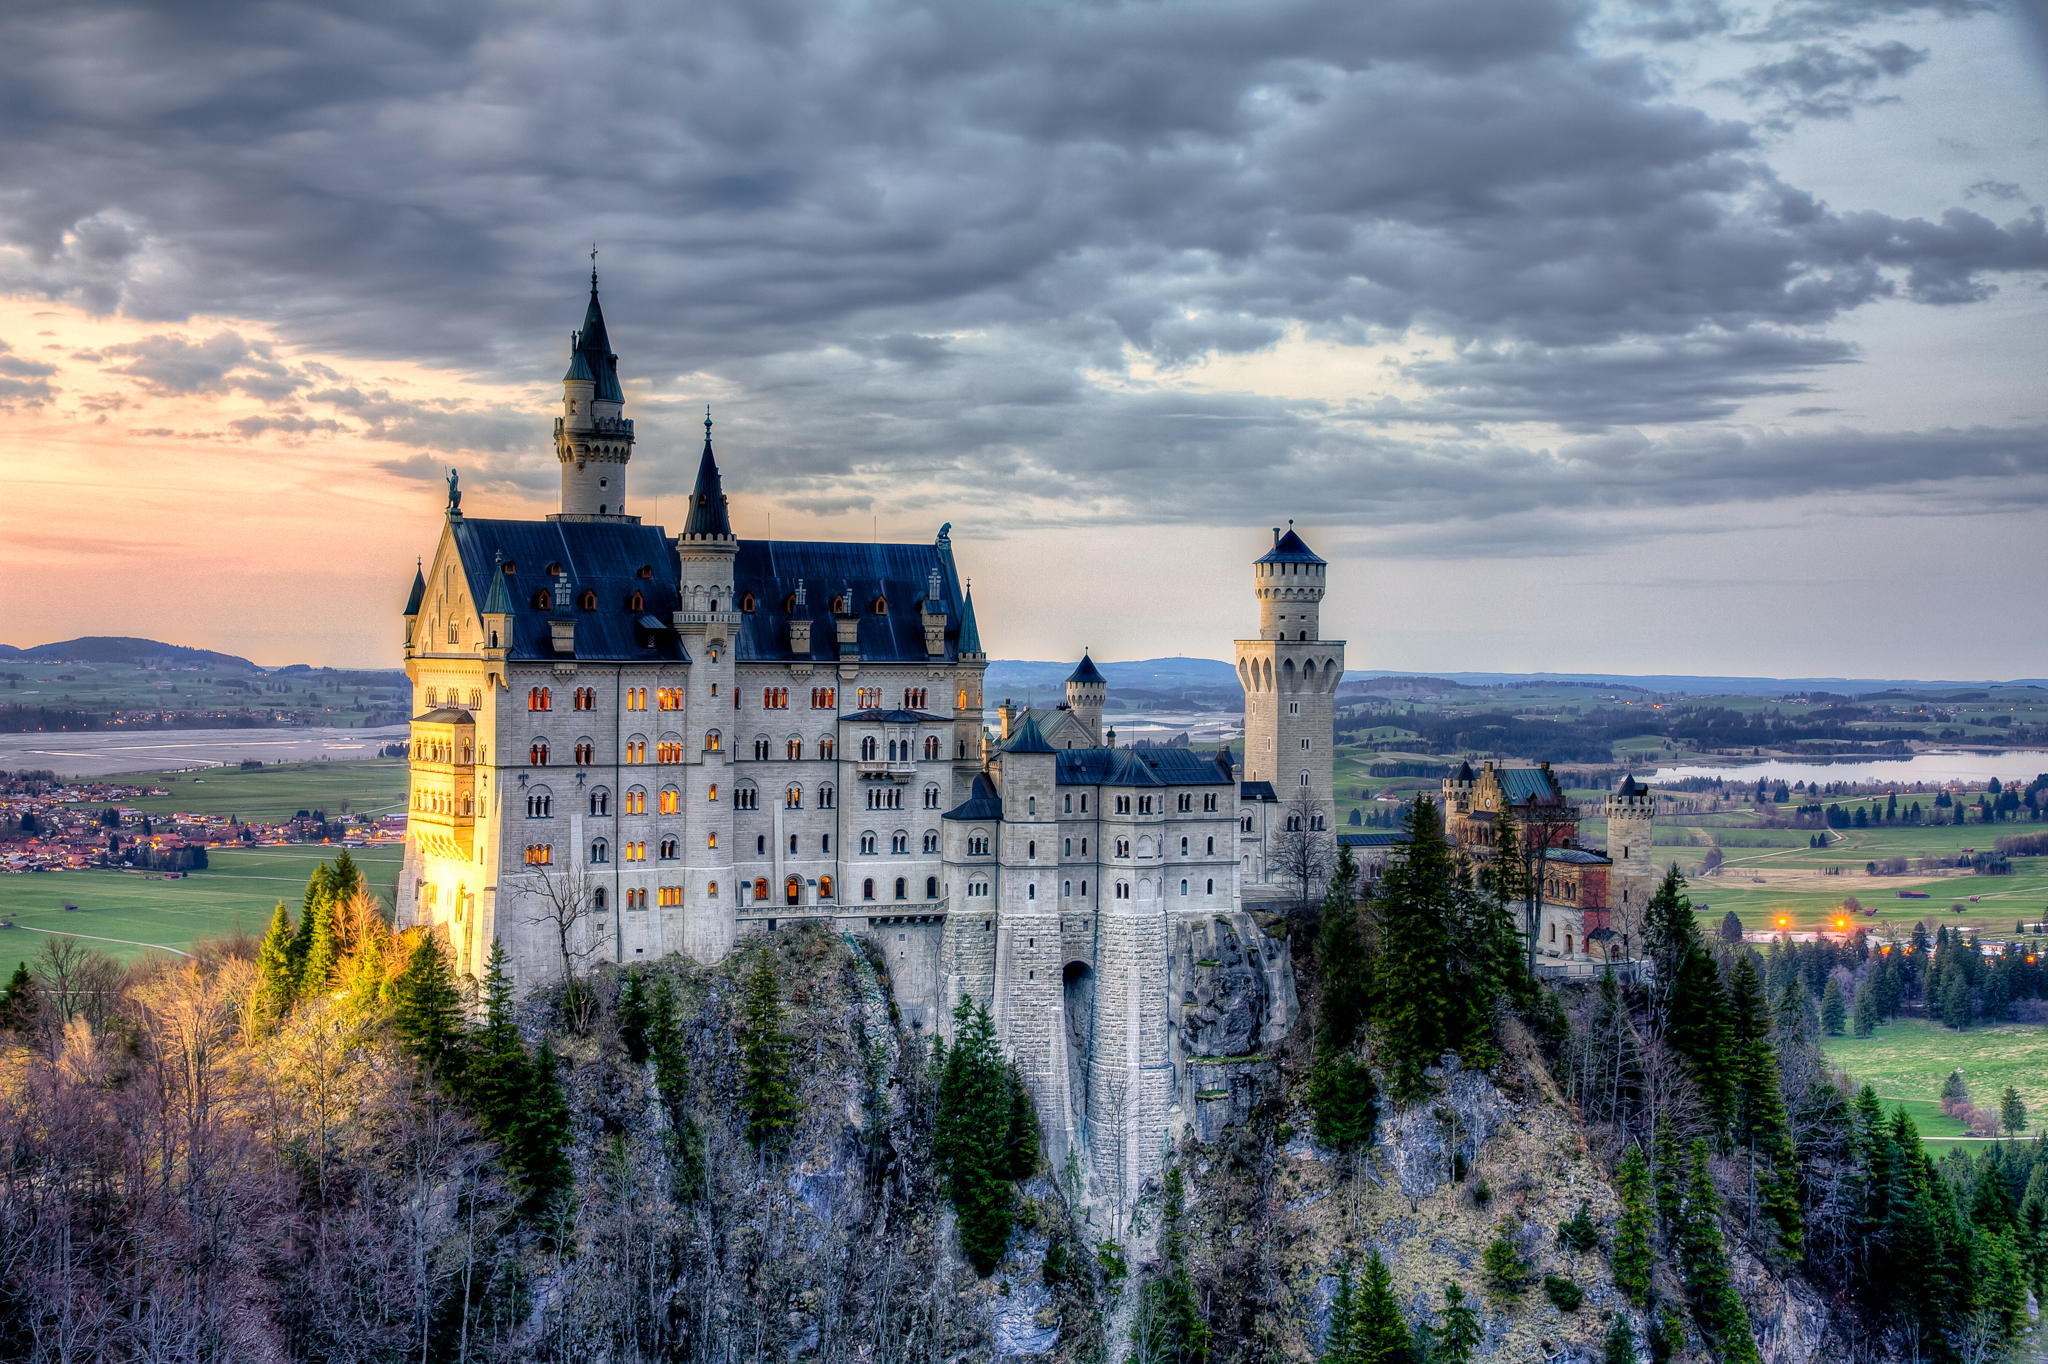 Обои на стол замки. Замок Нойшванштайн. Нойшванштайн Бавария. Замок Нойшванштайн («новый Лебединый Утес») в Германии;. Королевский замок Нойшванштайн (Бавария).